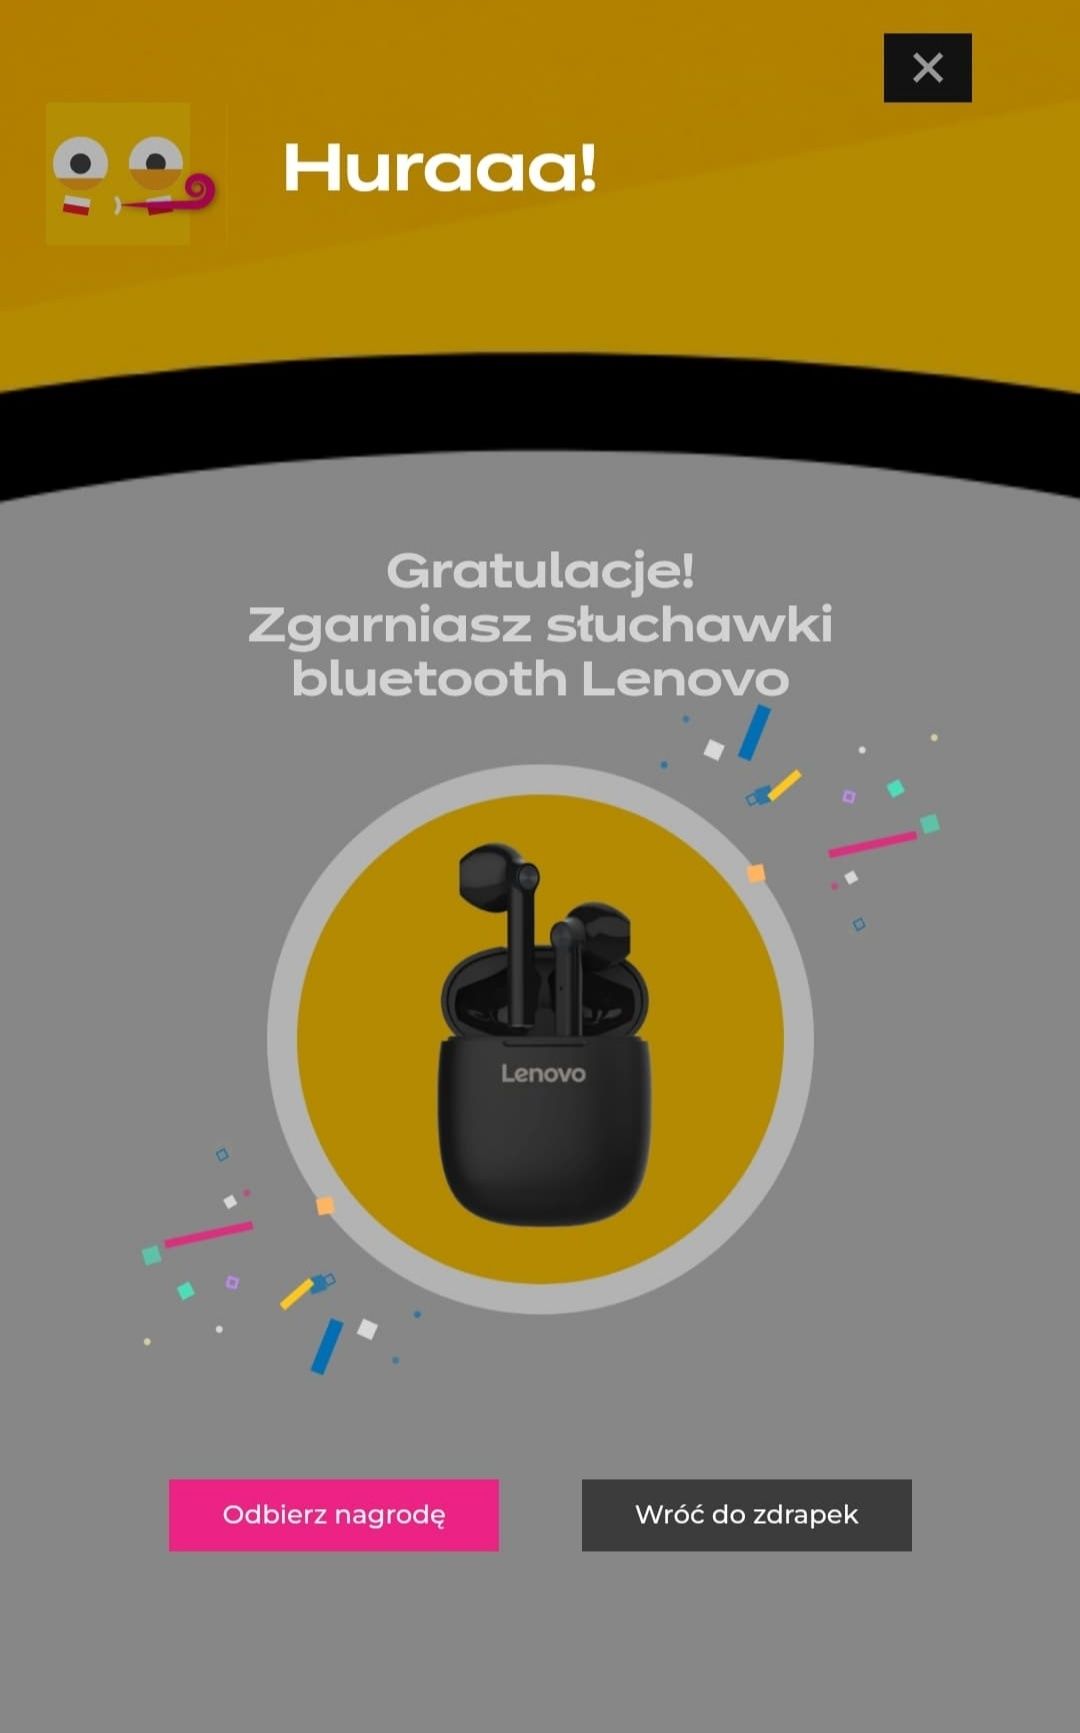 Słuchawki bezprzewodowe Lenovo thinkplus LivePods LP2